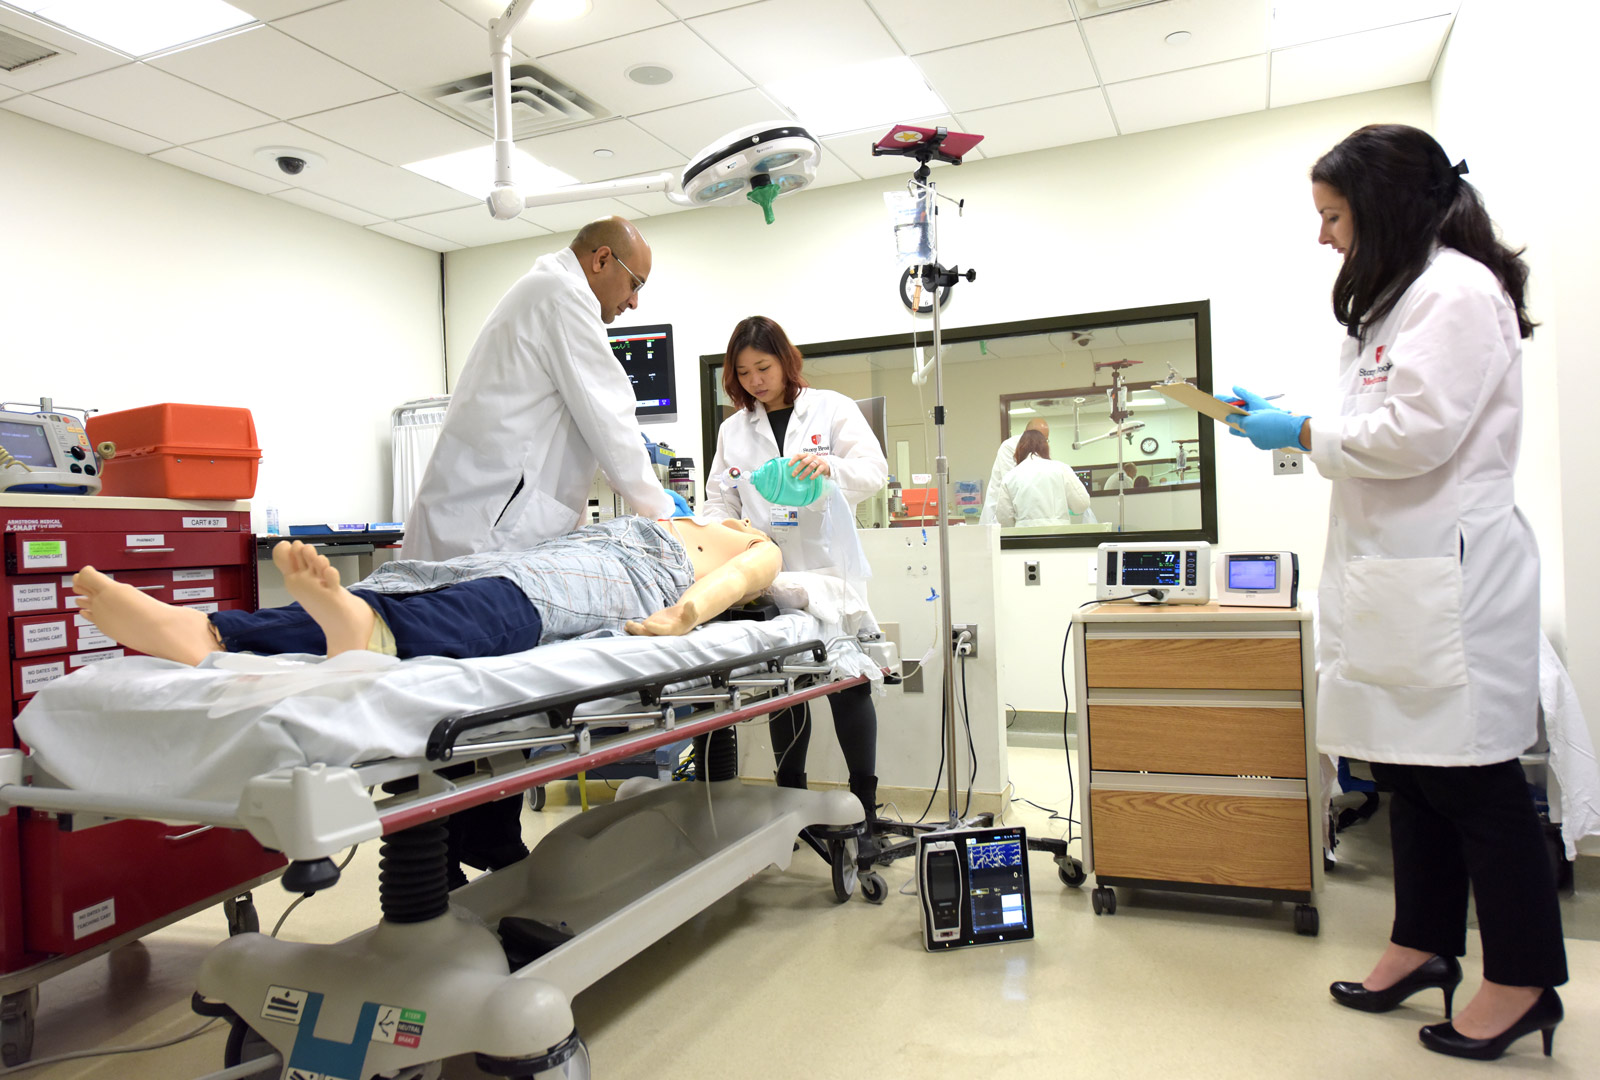 Forskere Demonstrerer Utstyrsoppsett For AWARE II-Studie Ved Stony Brook University Hospital